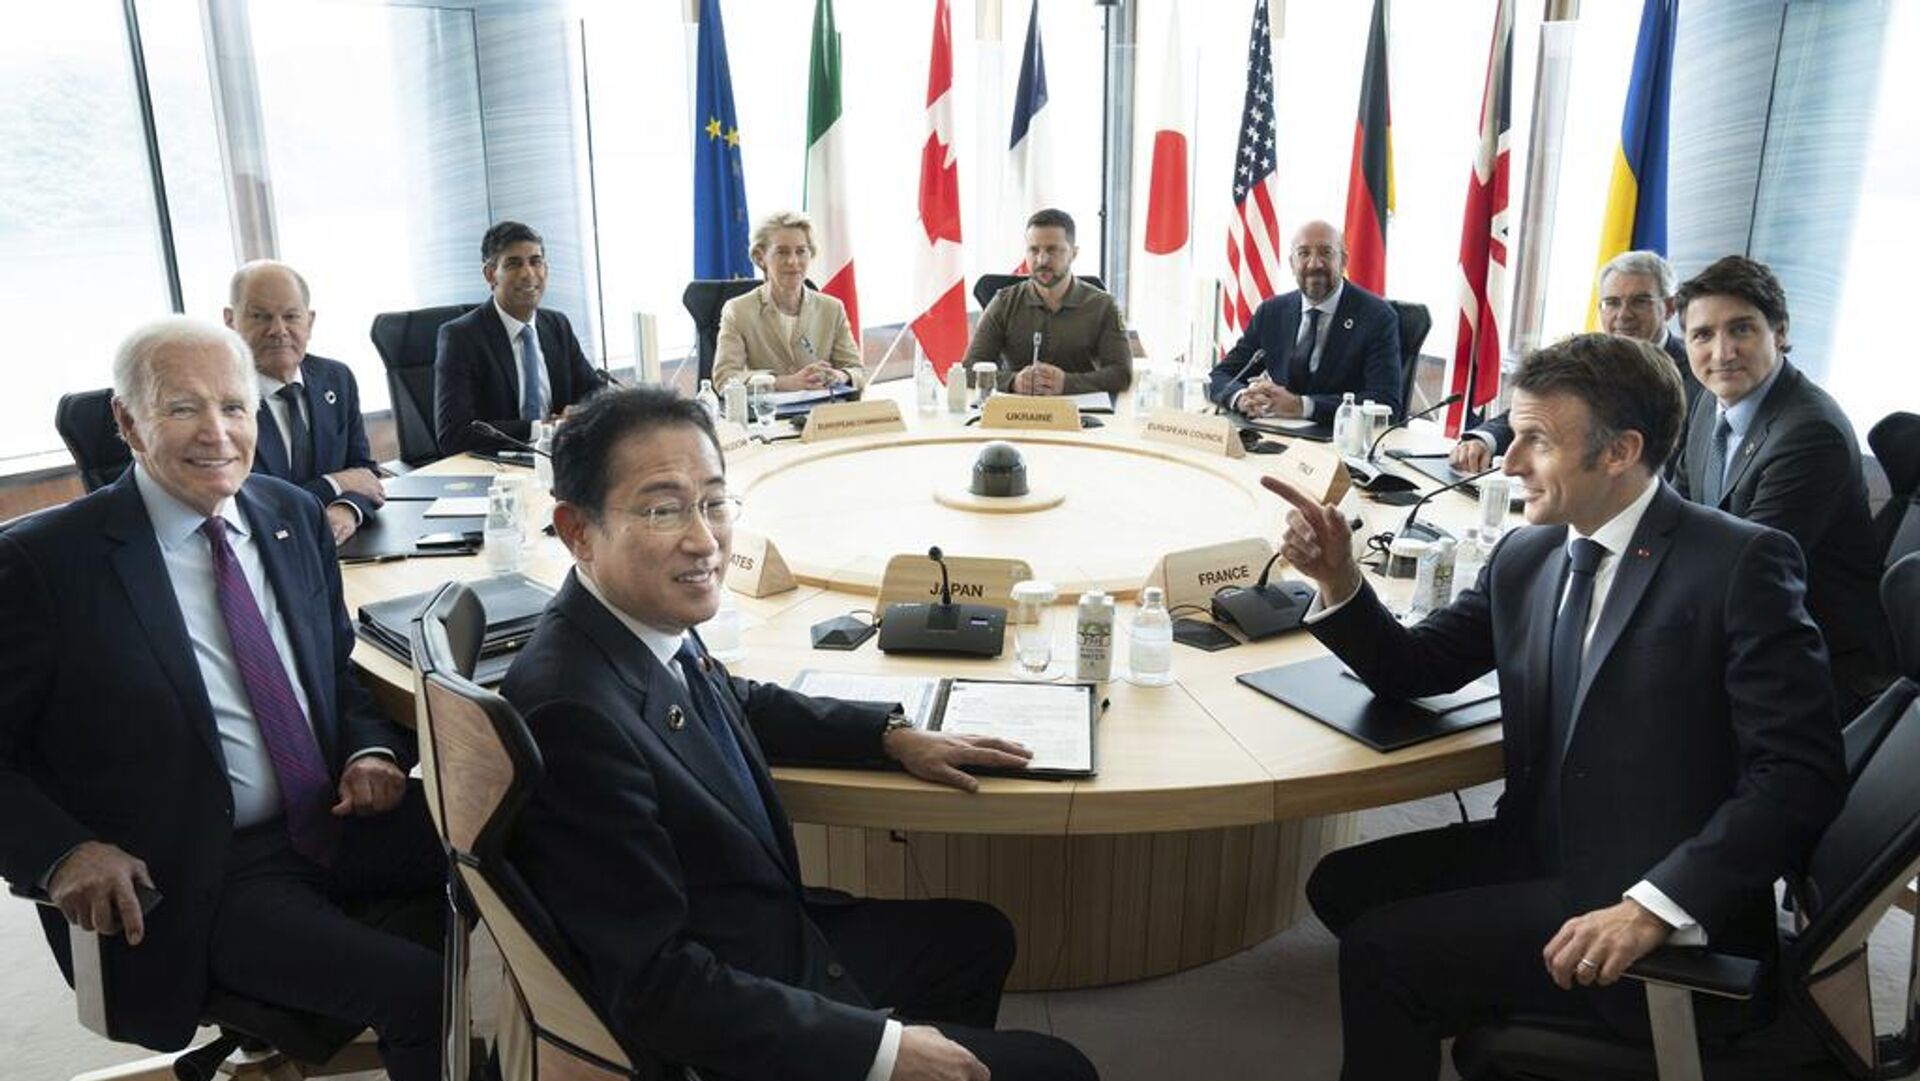  Лидеры G7 хотят спасти мир, но они не популярны даже в своих странах